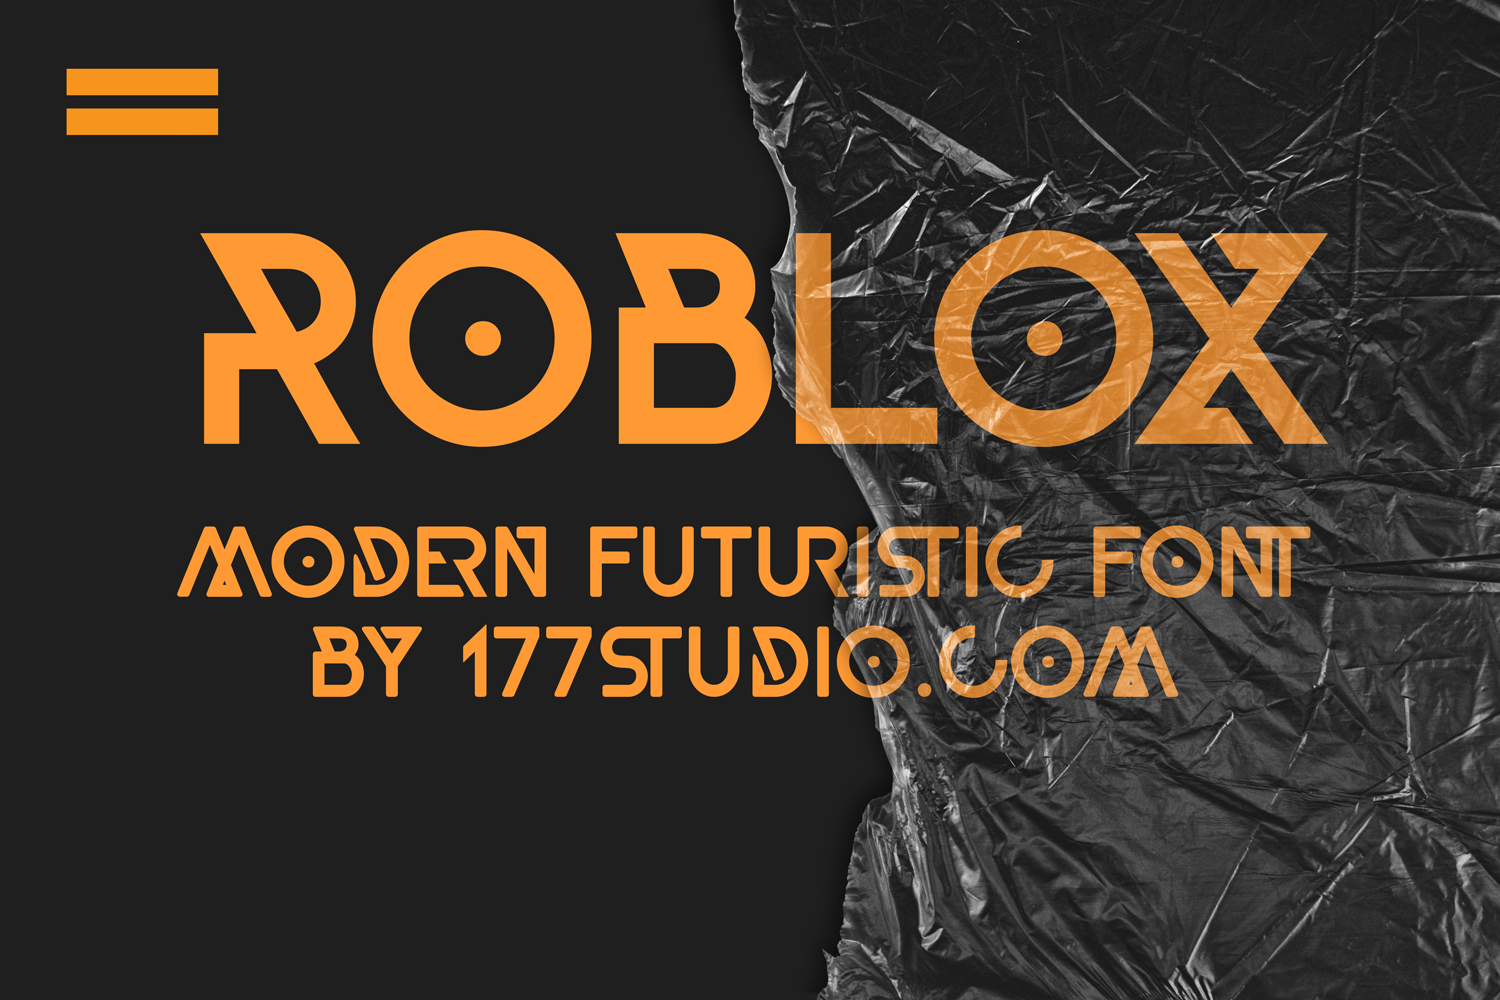 Roblox Font 177studio Fontspace - roblox font text generator